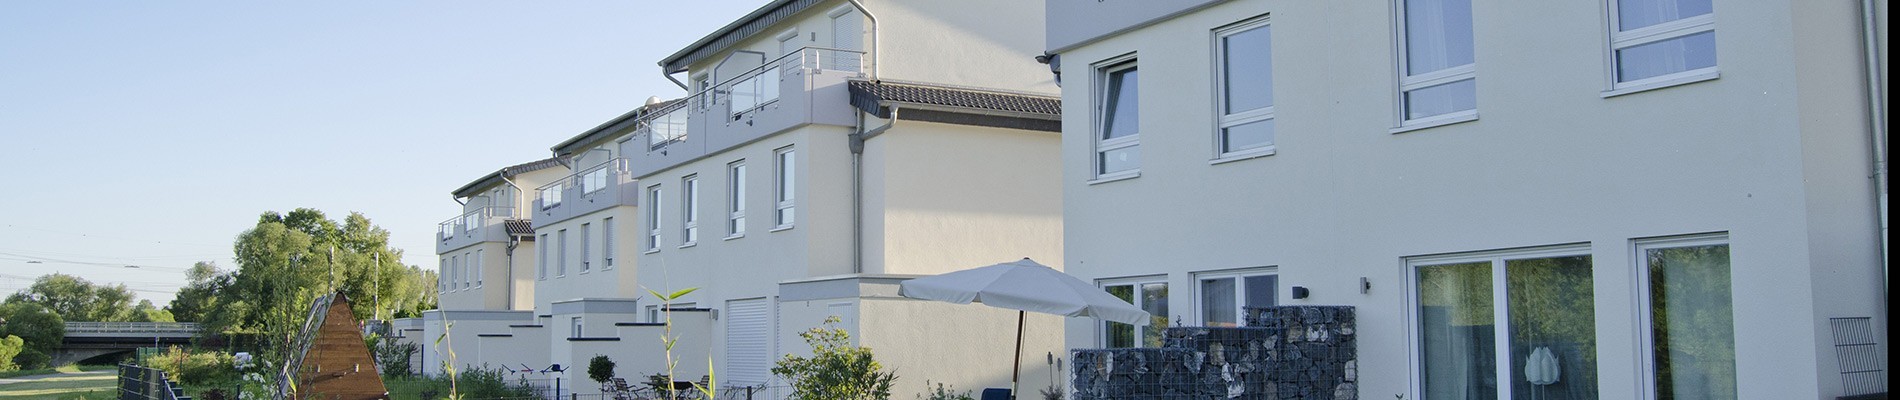 Bilder Riessbacher Hausverwaltung GmbH, Hausverwalter, Immobilienverwalter